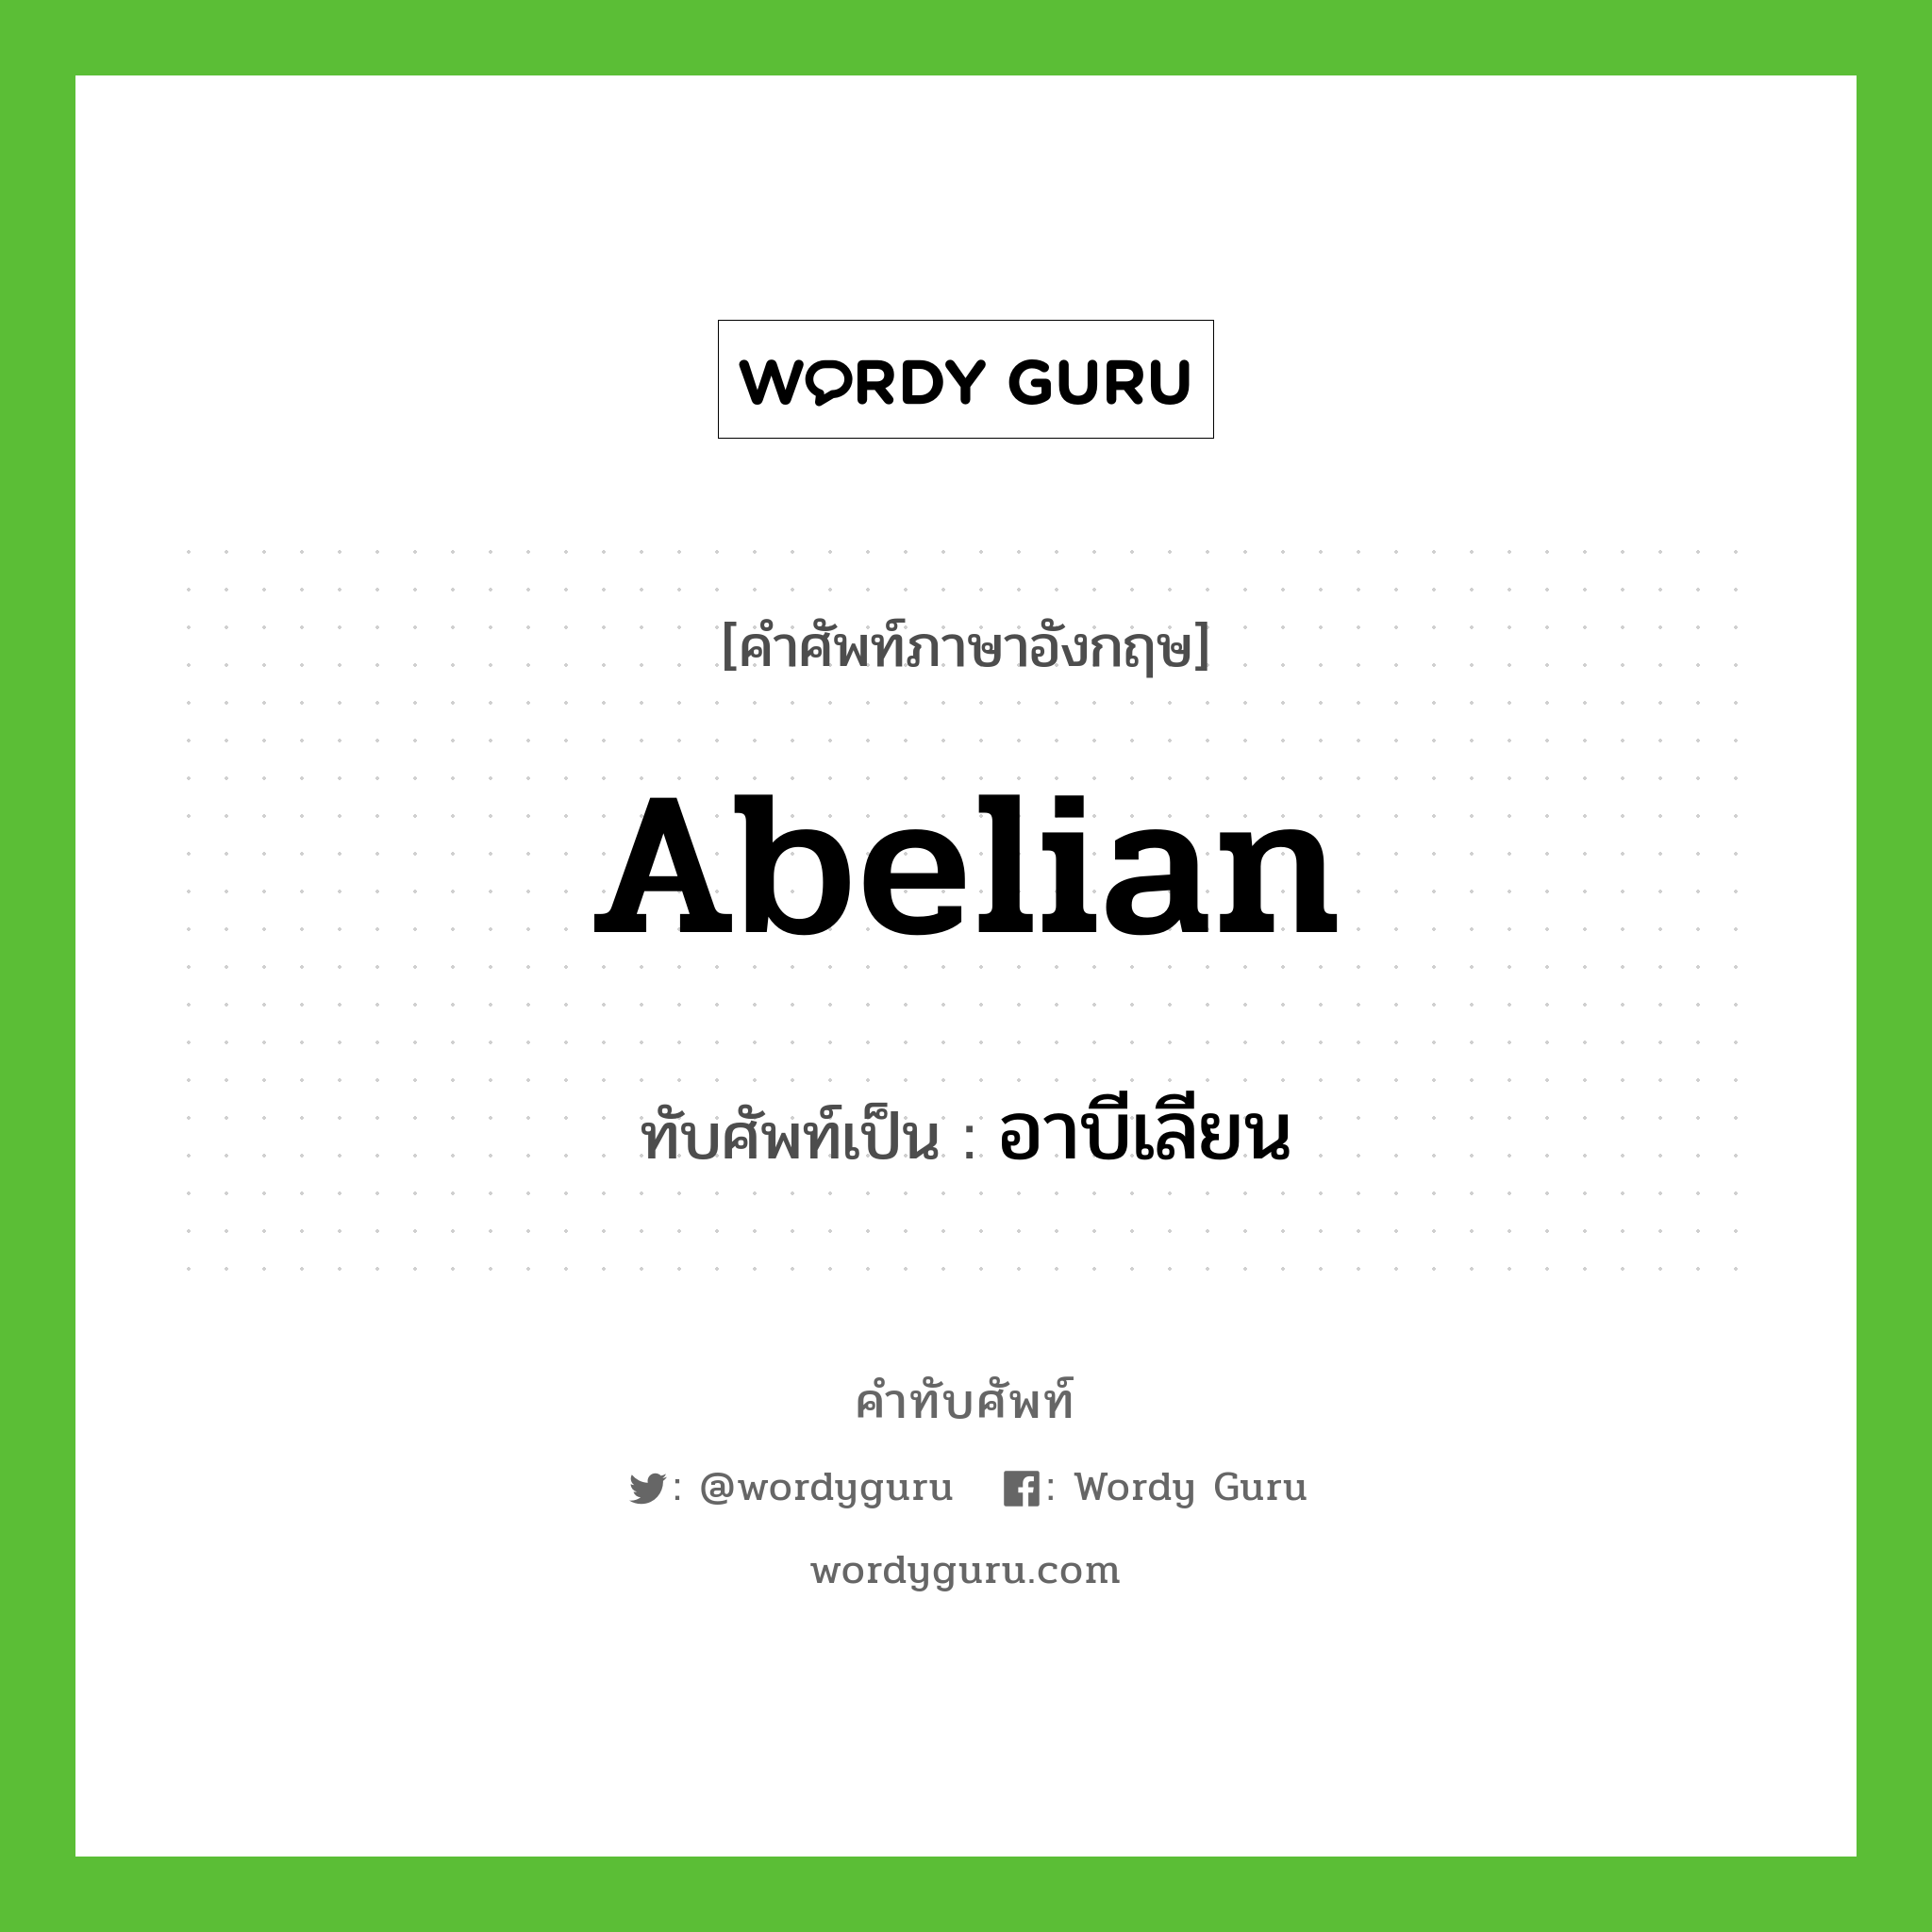 abelian เขียนเป็นคำไทยว่าอะไร?, คำศัพท์ภาษาอังกฤษ abelian ทับศัพท์เป็น อาบีเลียน